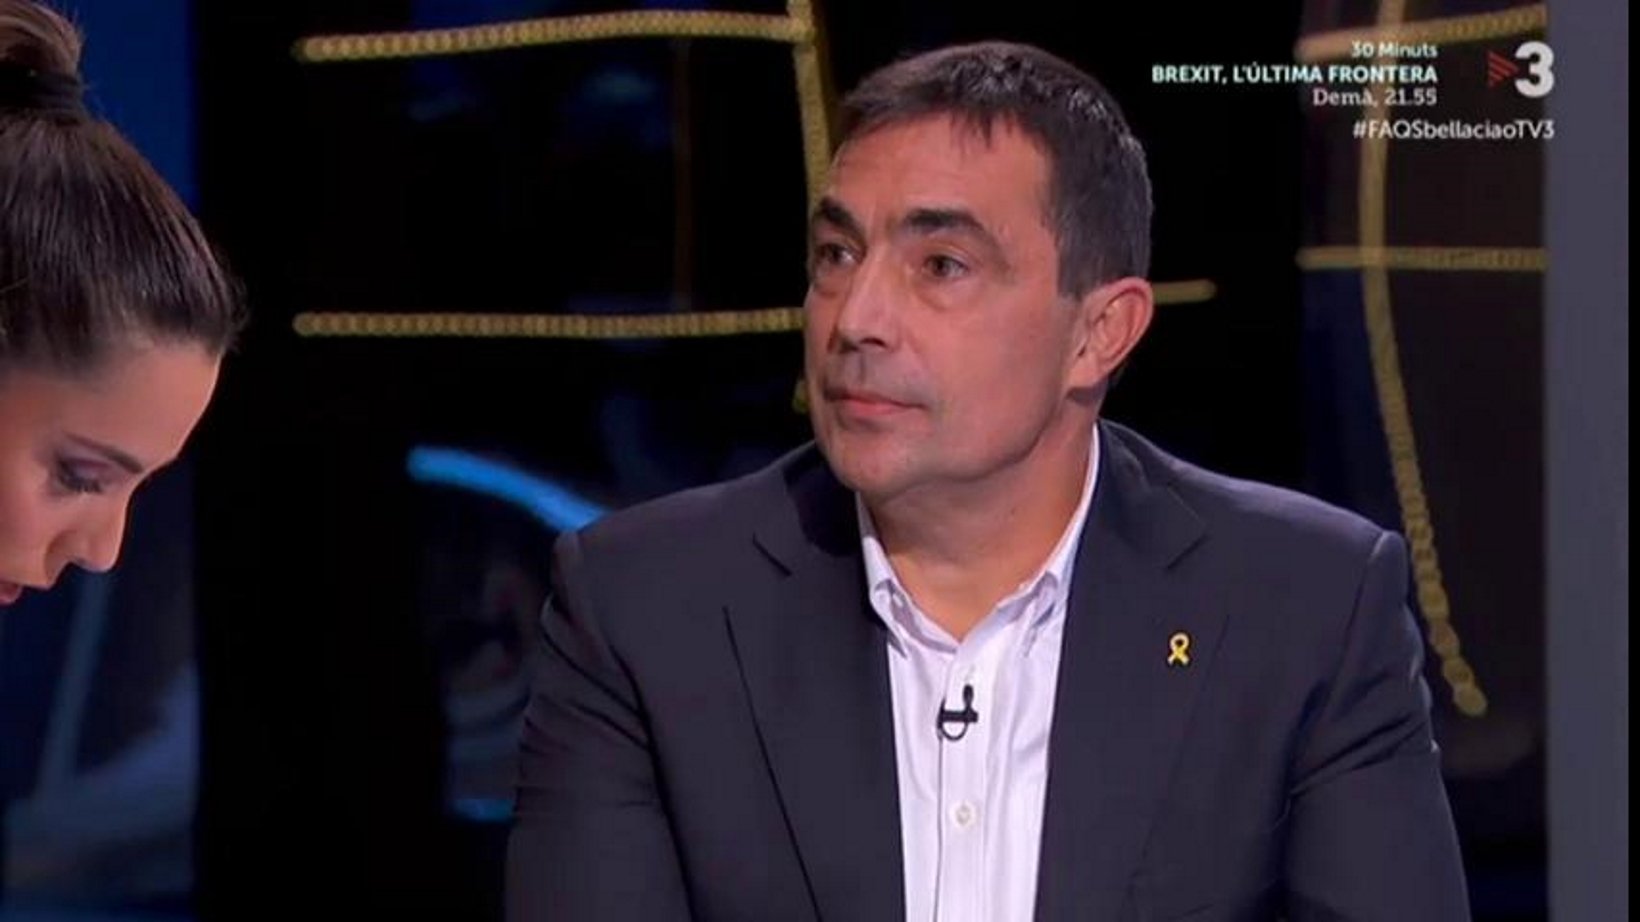 Soler, exdirector de los Mossos: "Durante la instrucción no se citó la violencia"